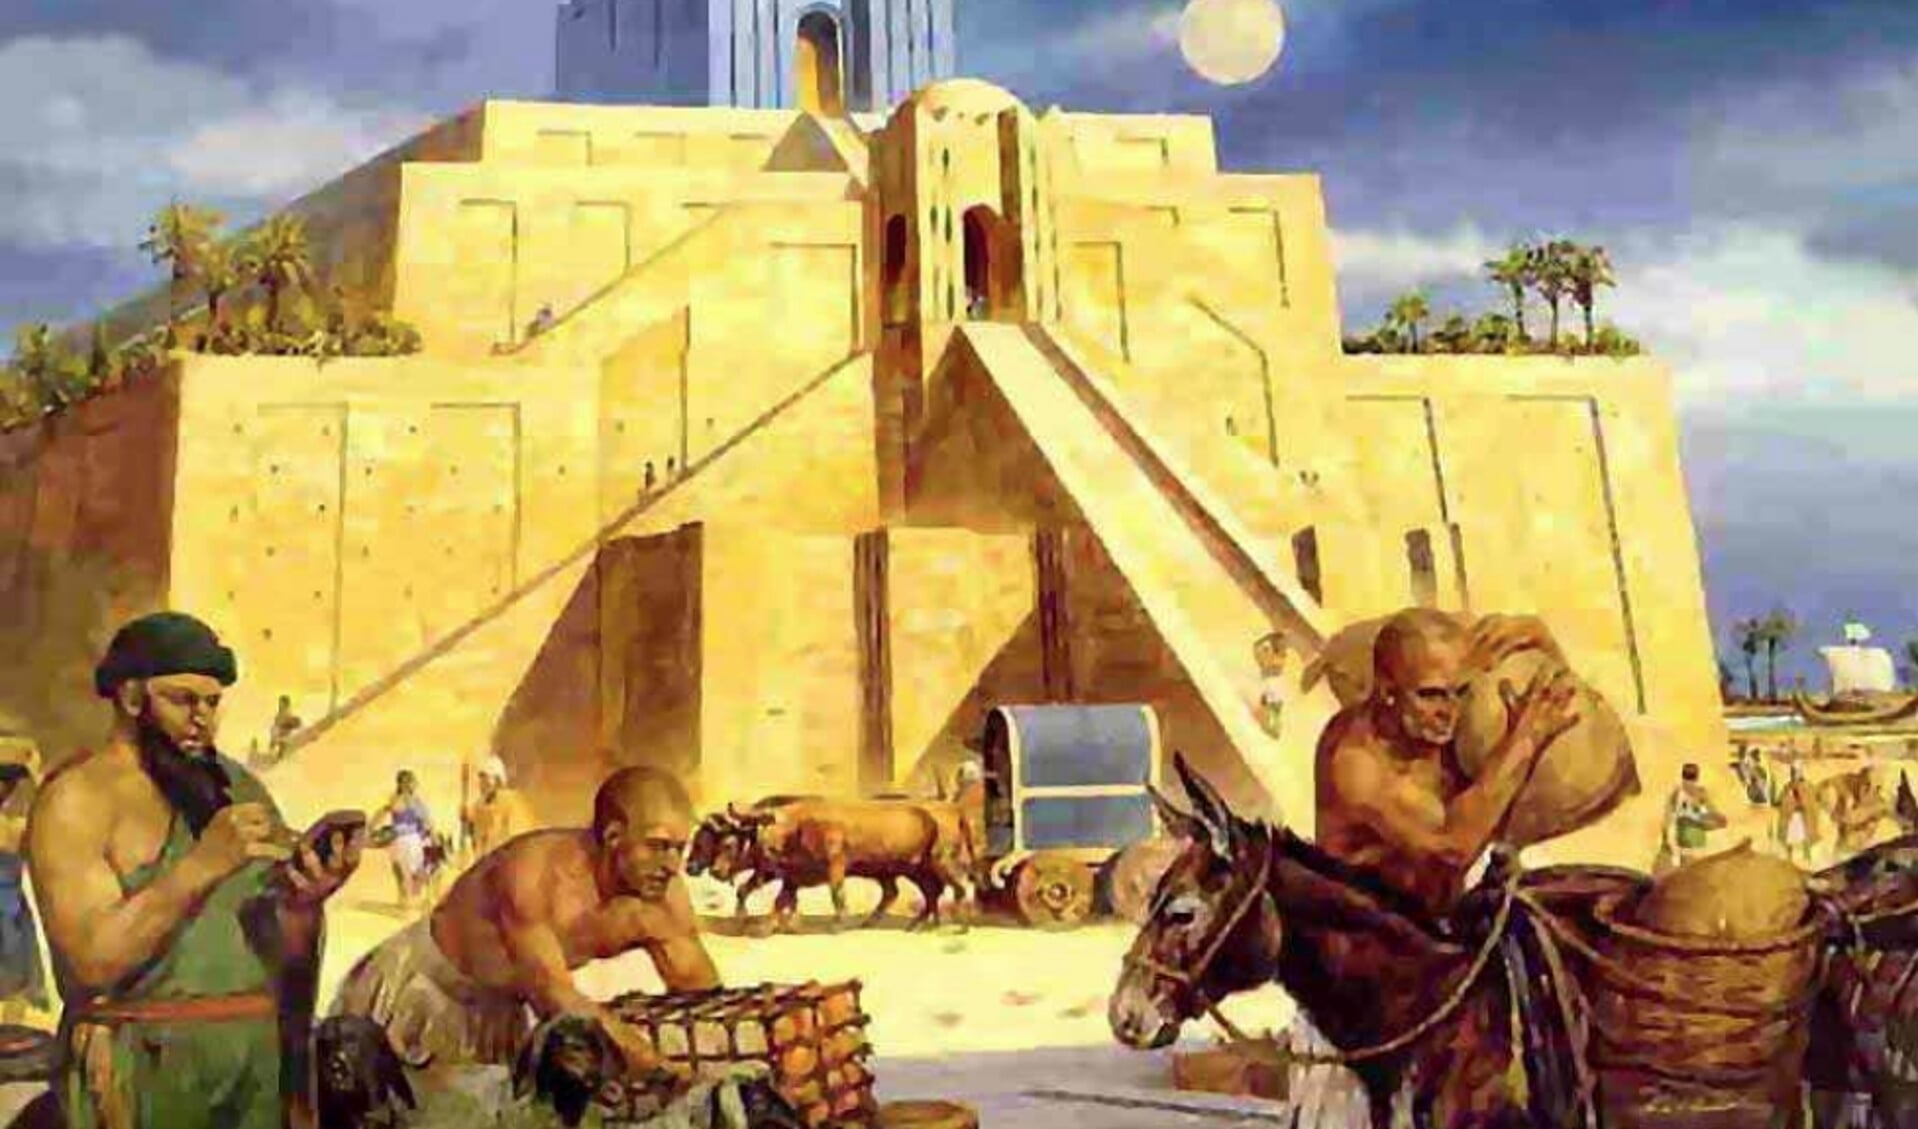 De historische stad Nineveh telde prachtige paleizen en tempels.